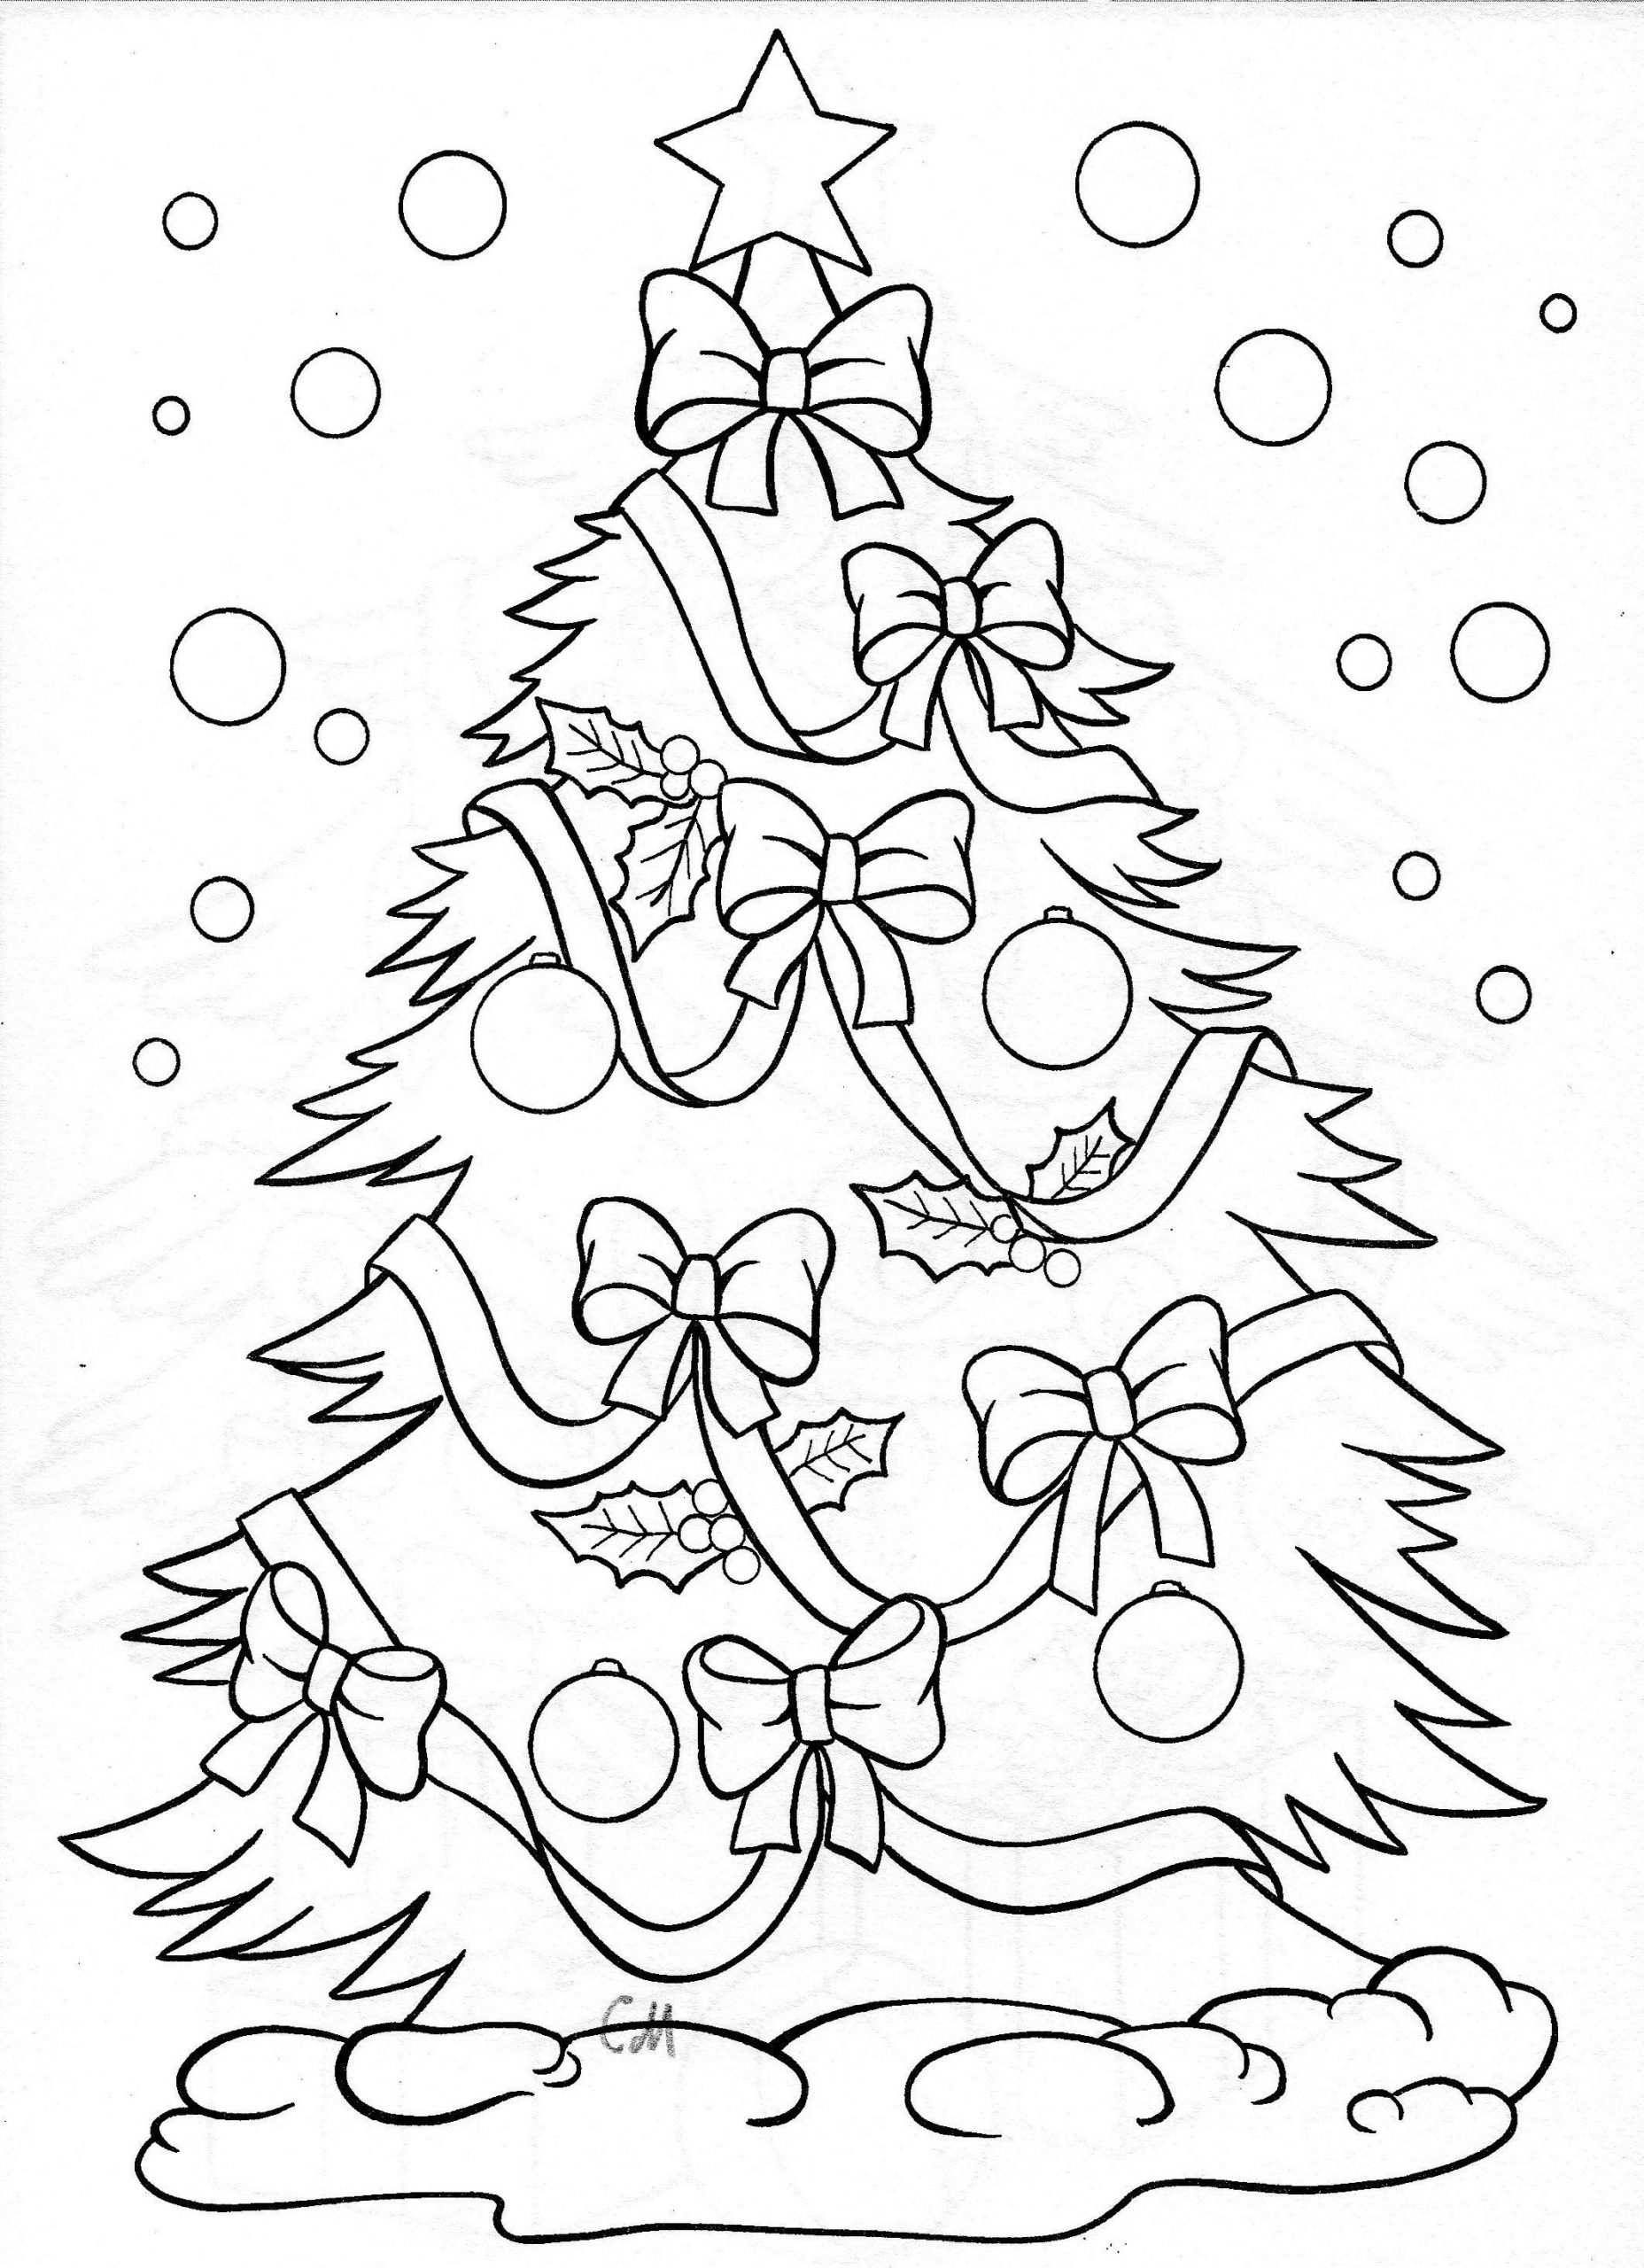 Ausmalbilder Erwachsene Weihnachtsbaum ganzes Ausmalbild Weihnachtsbaum